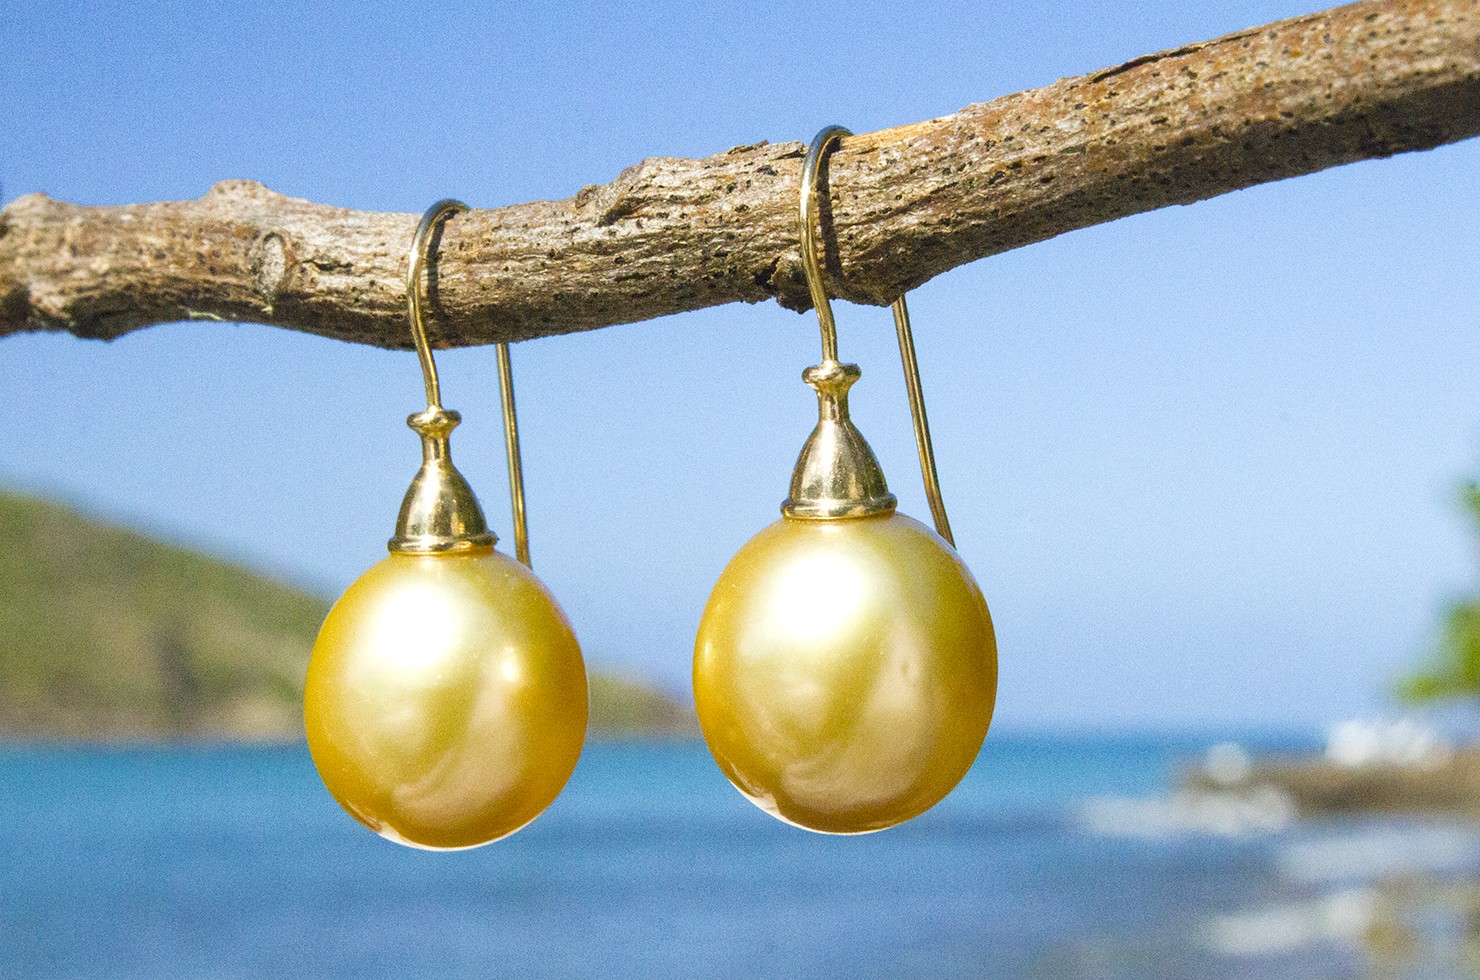 Boucle d'oreilles perles d'Australie dorée - 12 mm